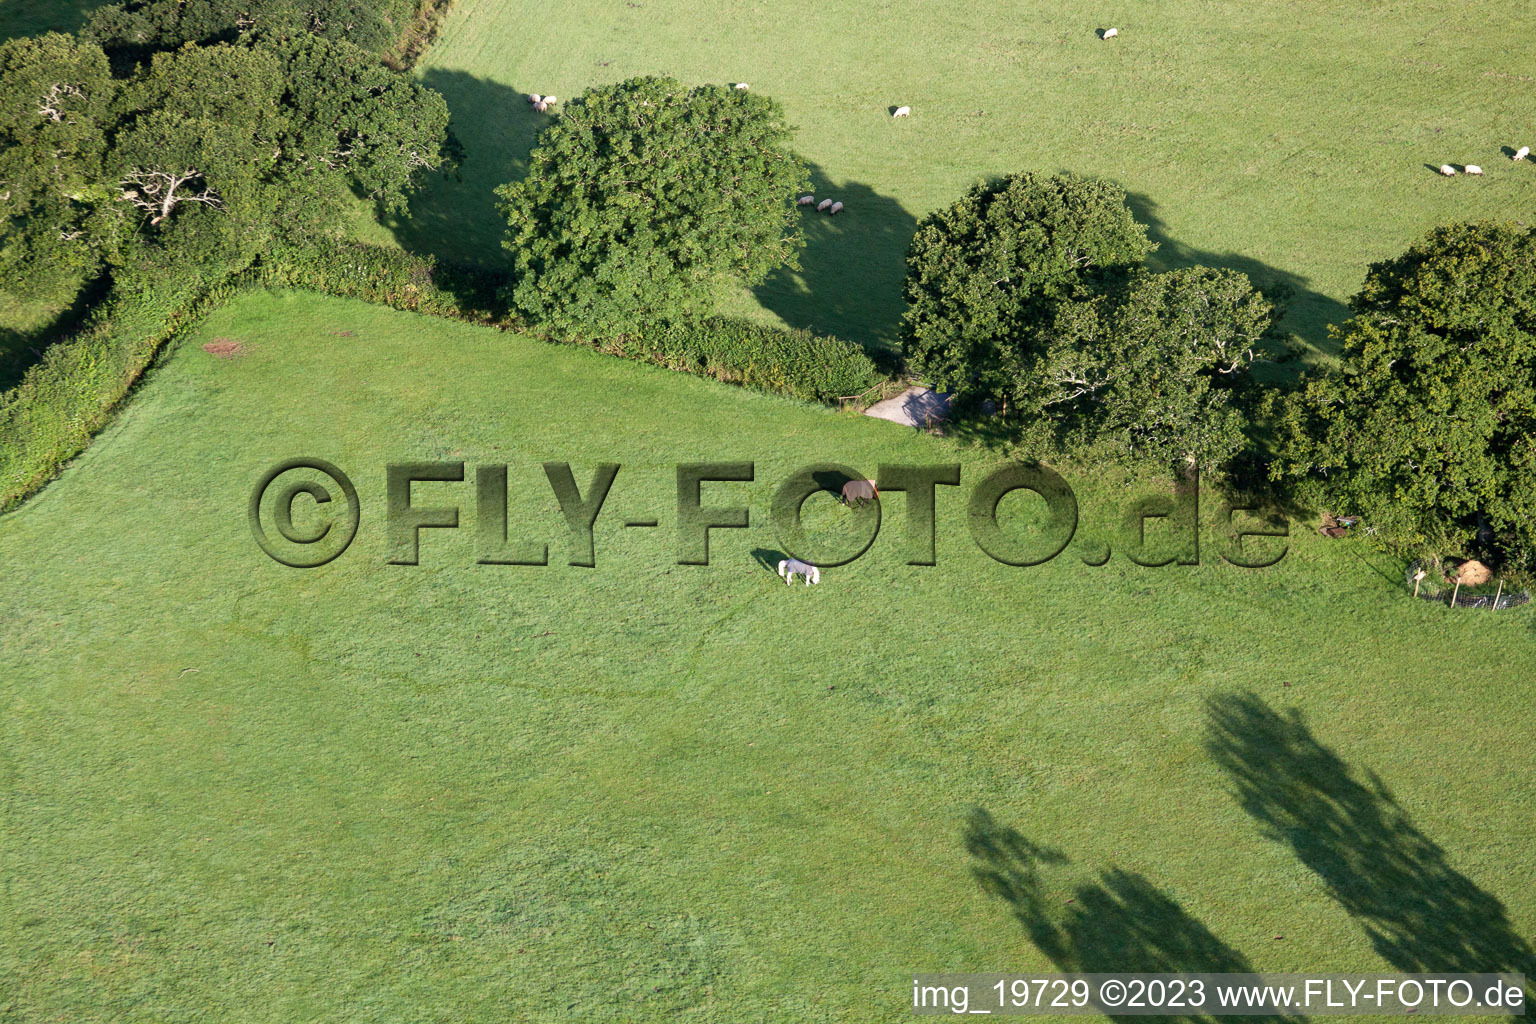 Abbotskerswell dans le département Angleterre, Grande Bretagne vu d'un drone